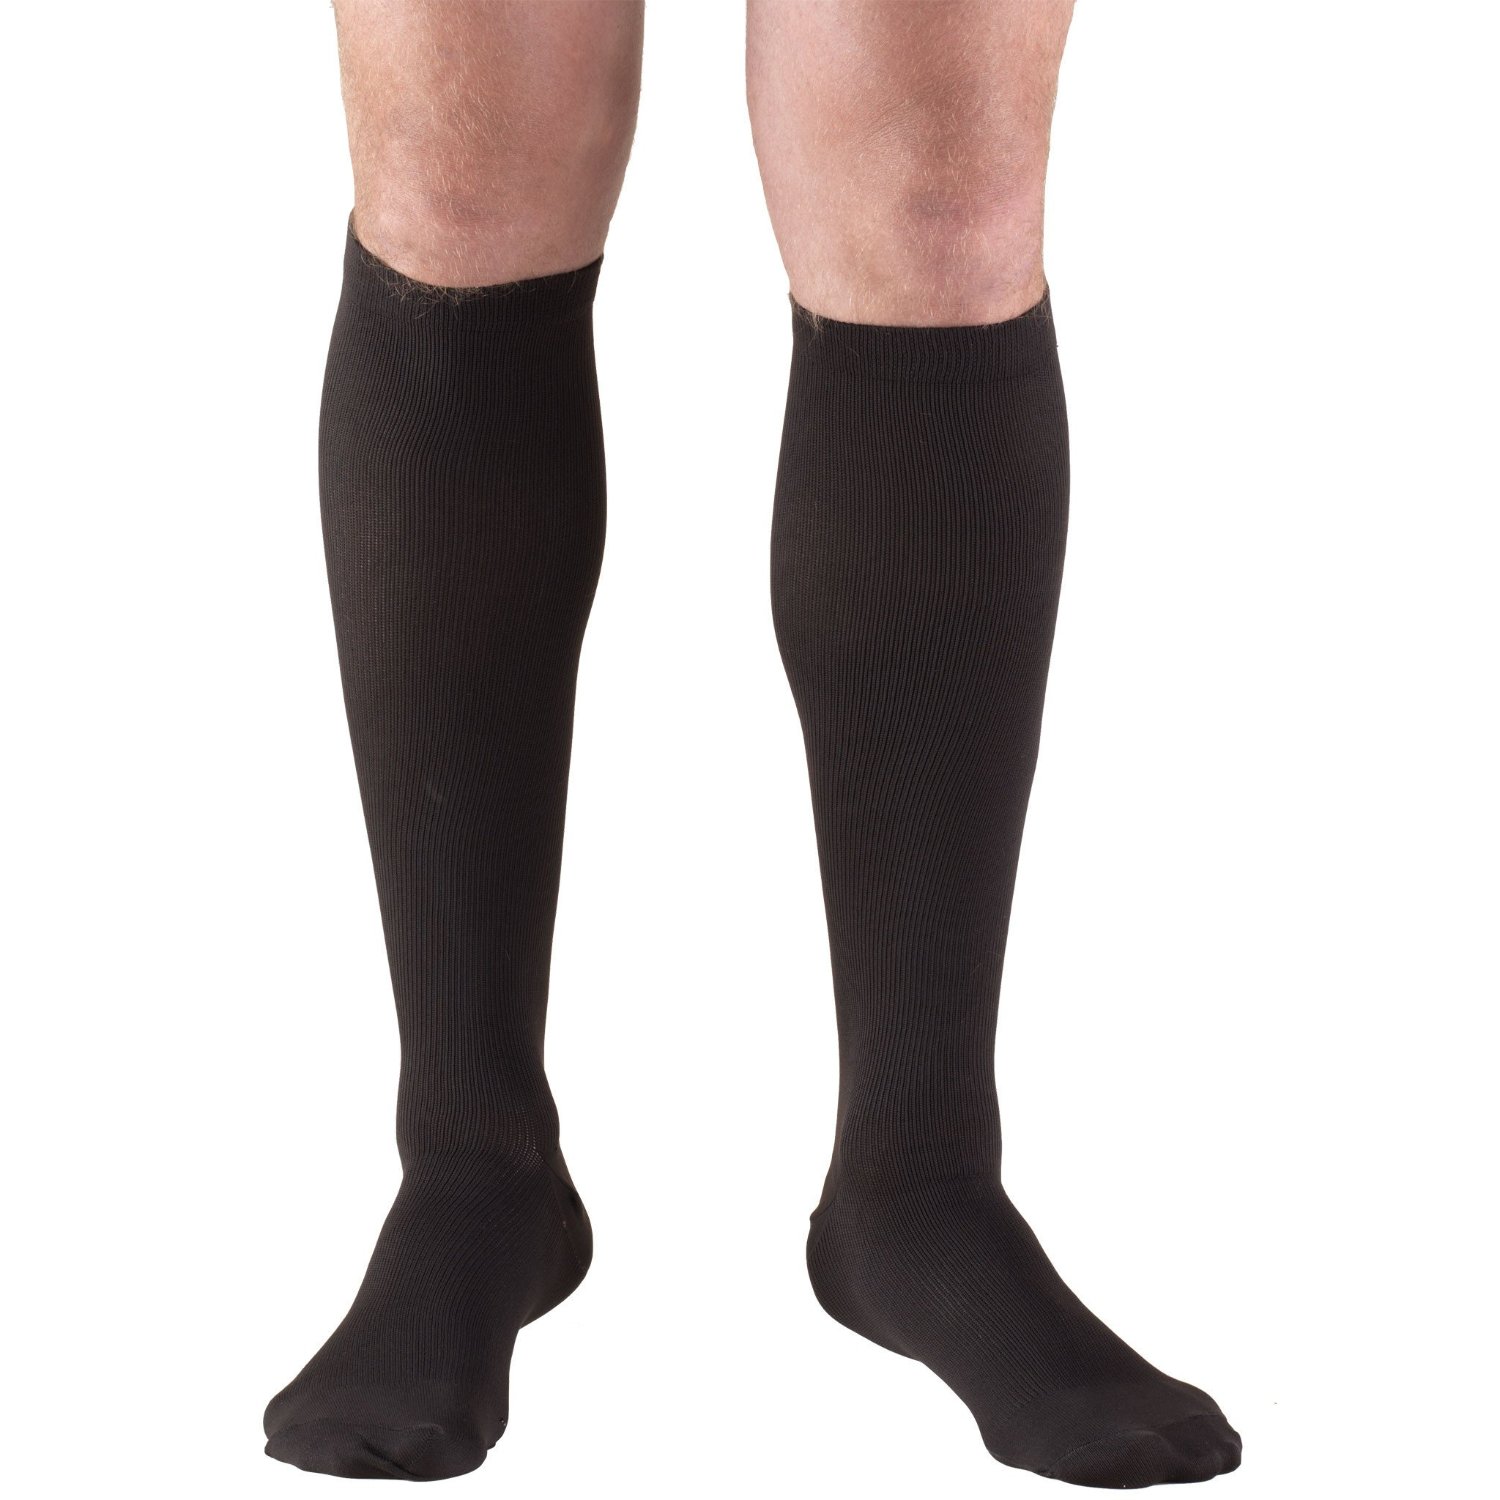 Knee High Socks / Men's Dress (8-15 MMHG) | Medicine Shoppe Online